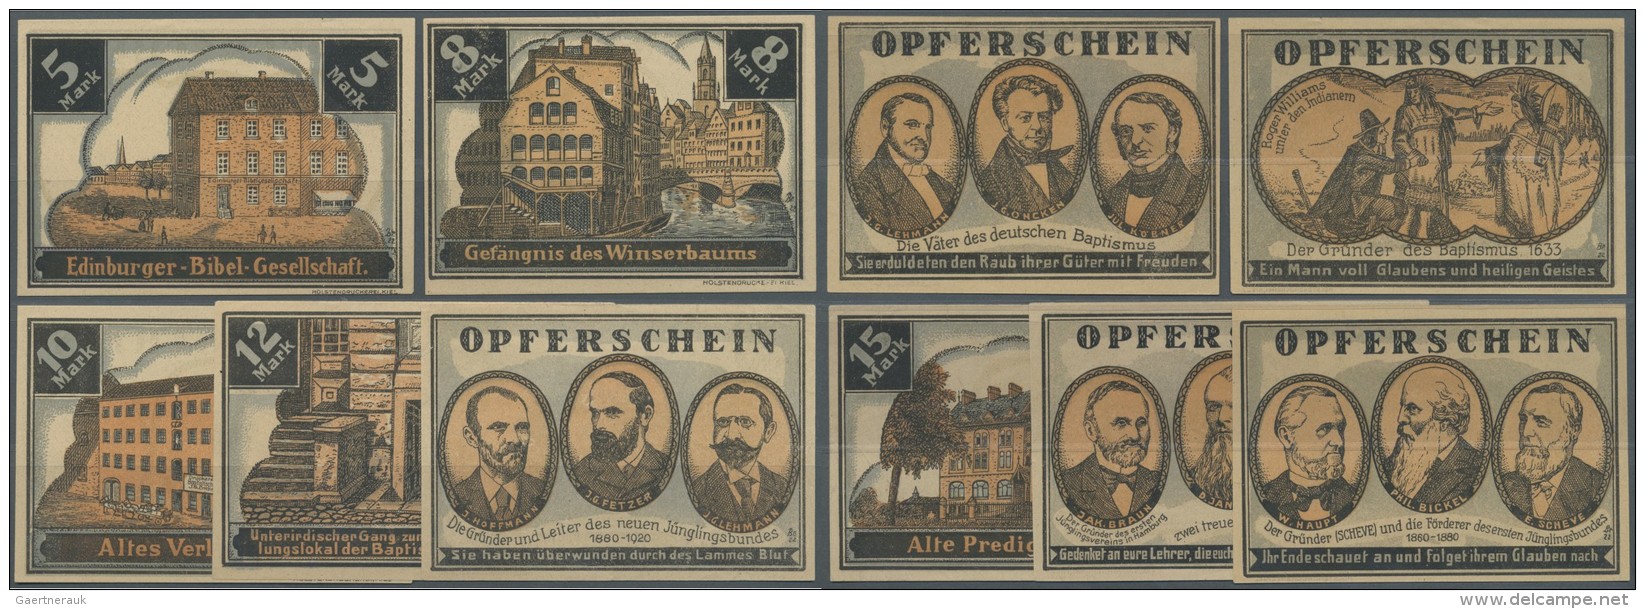 Deutschland - Notgeld - Hamburg: Hamburg, Baptistengemeinde, 5, 8, 10, 12, 15 Mark, O. D. (1922), Opferscheine; Erh. Mei - Lokale Ausgaben